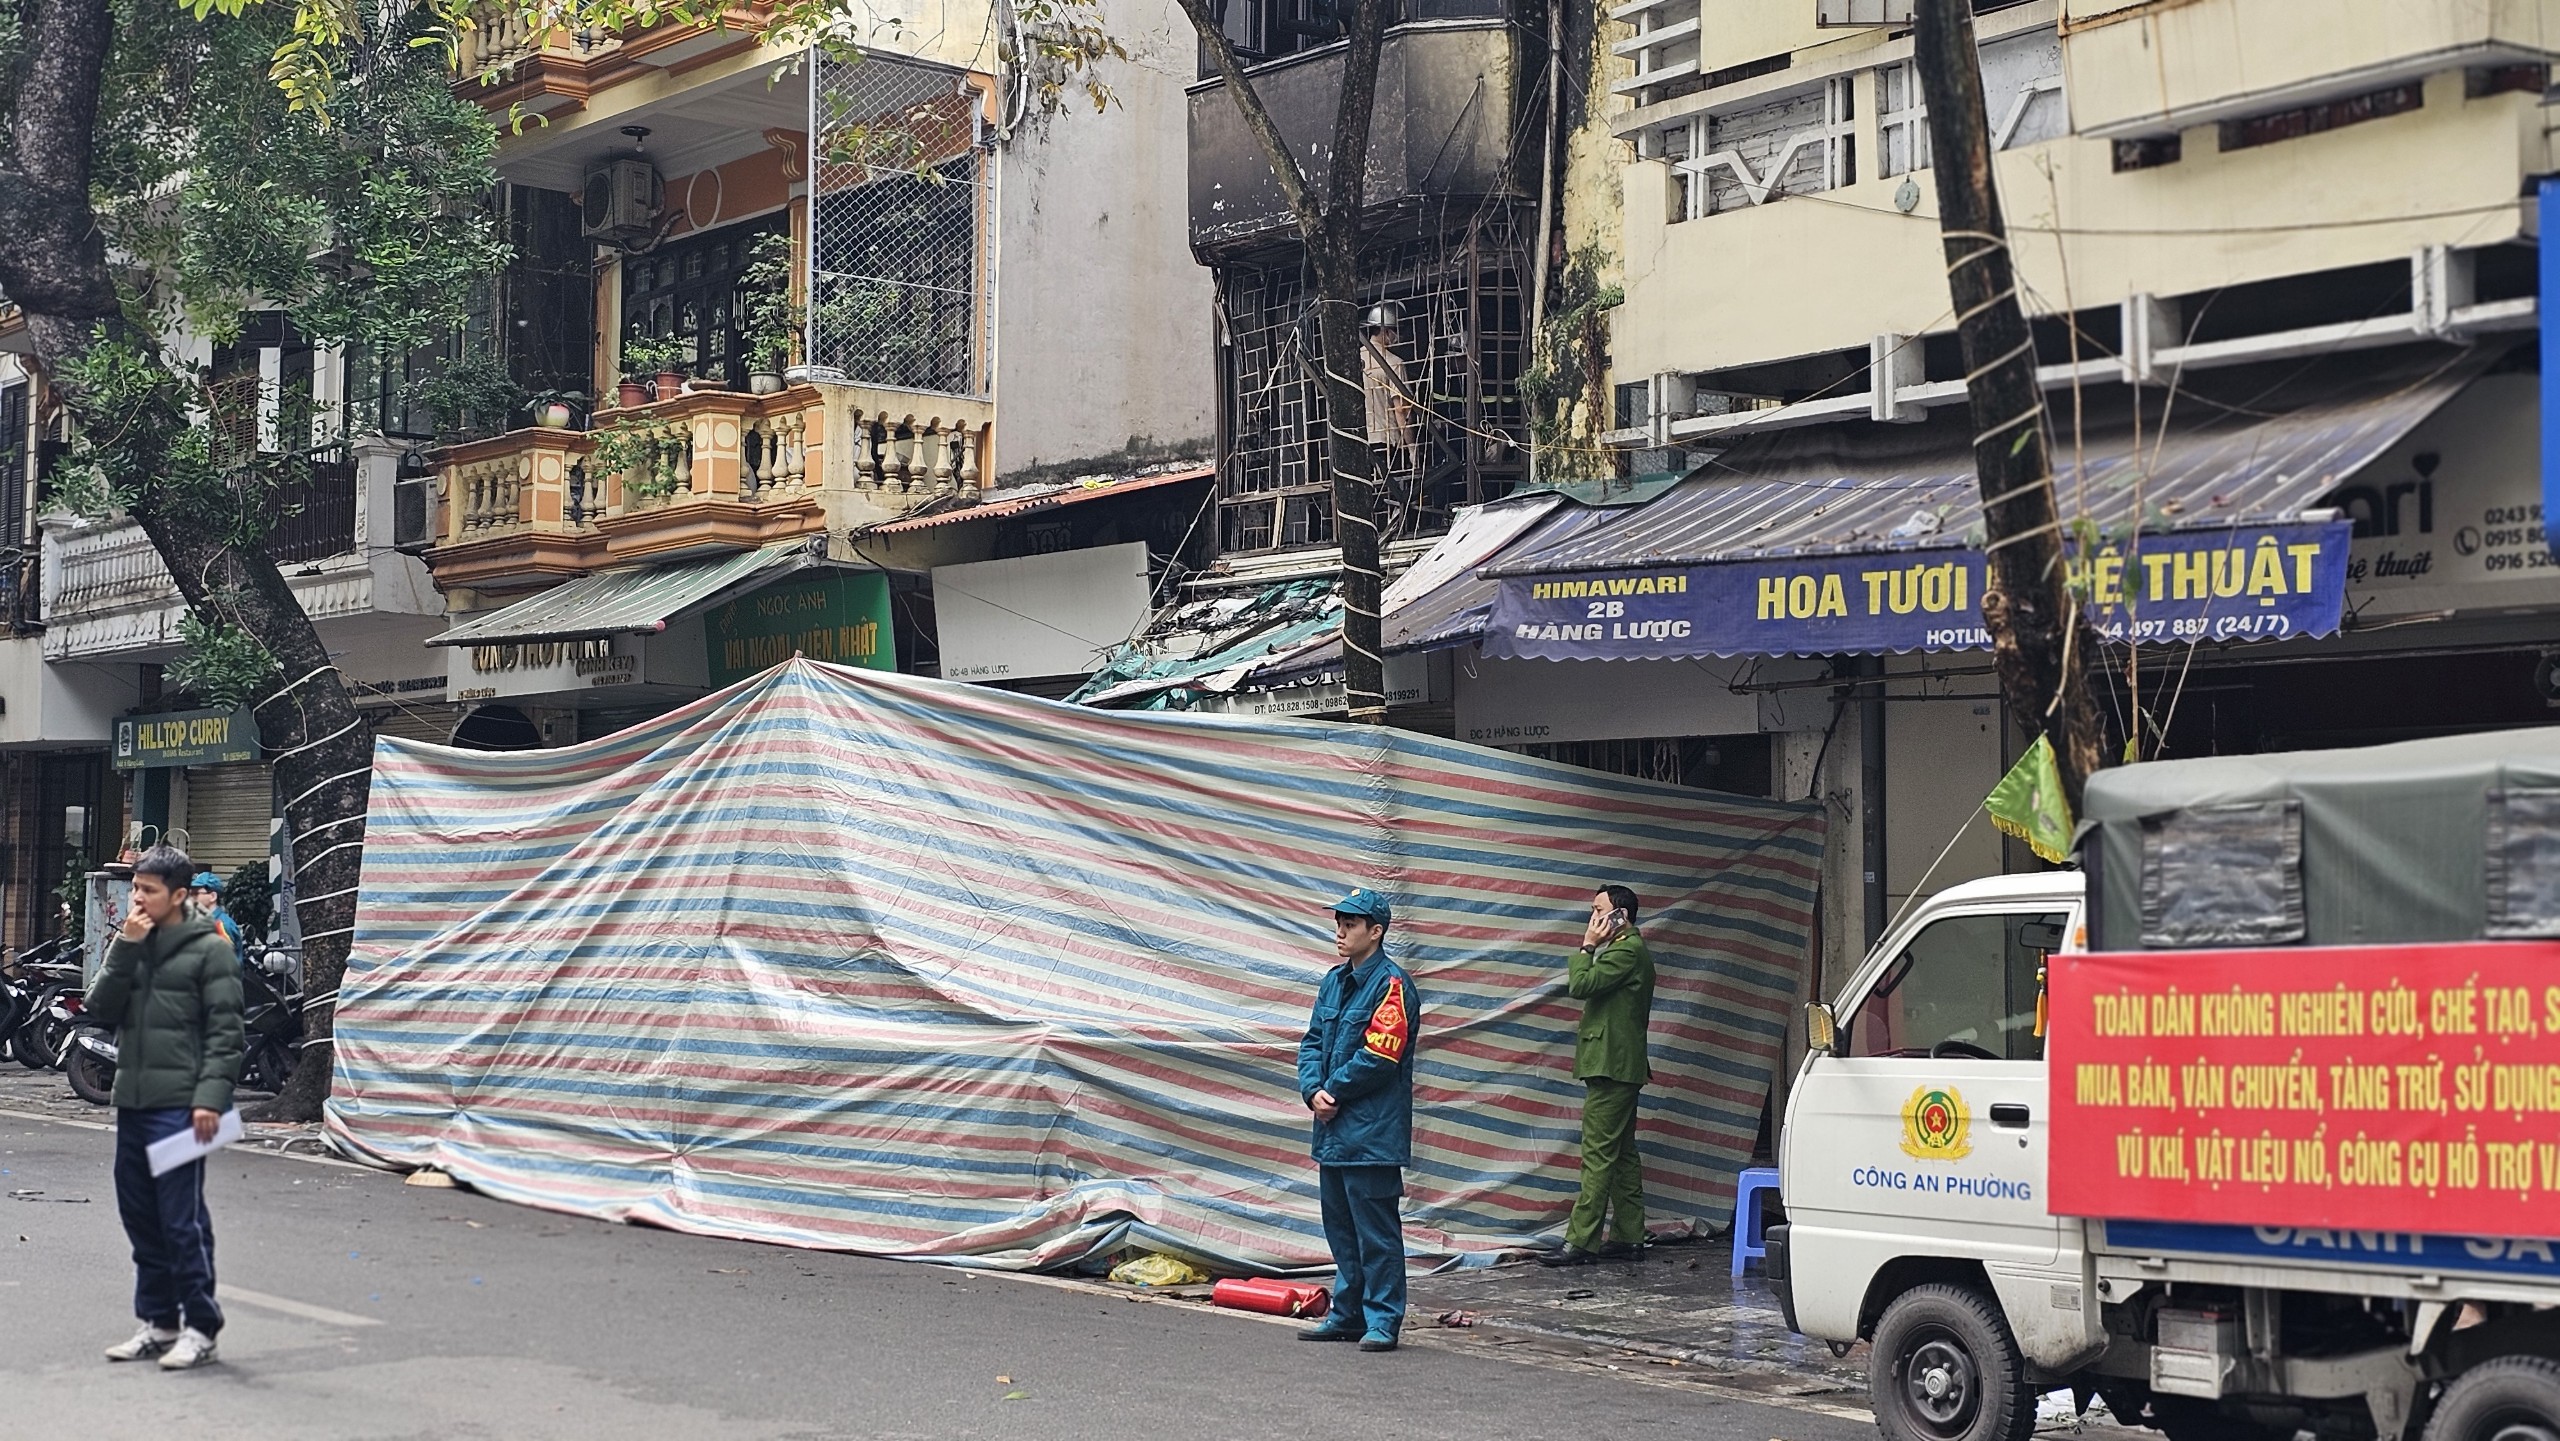 Cháy nhà, 4 người tử vong ở Hà Nội: Cửa khoá chặt, hàng xóm bất lực dập lửa- Ảnh 1.